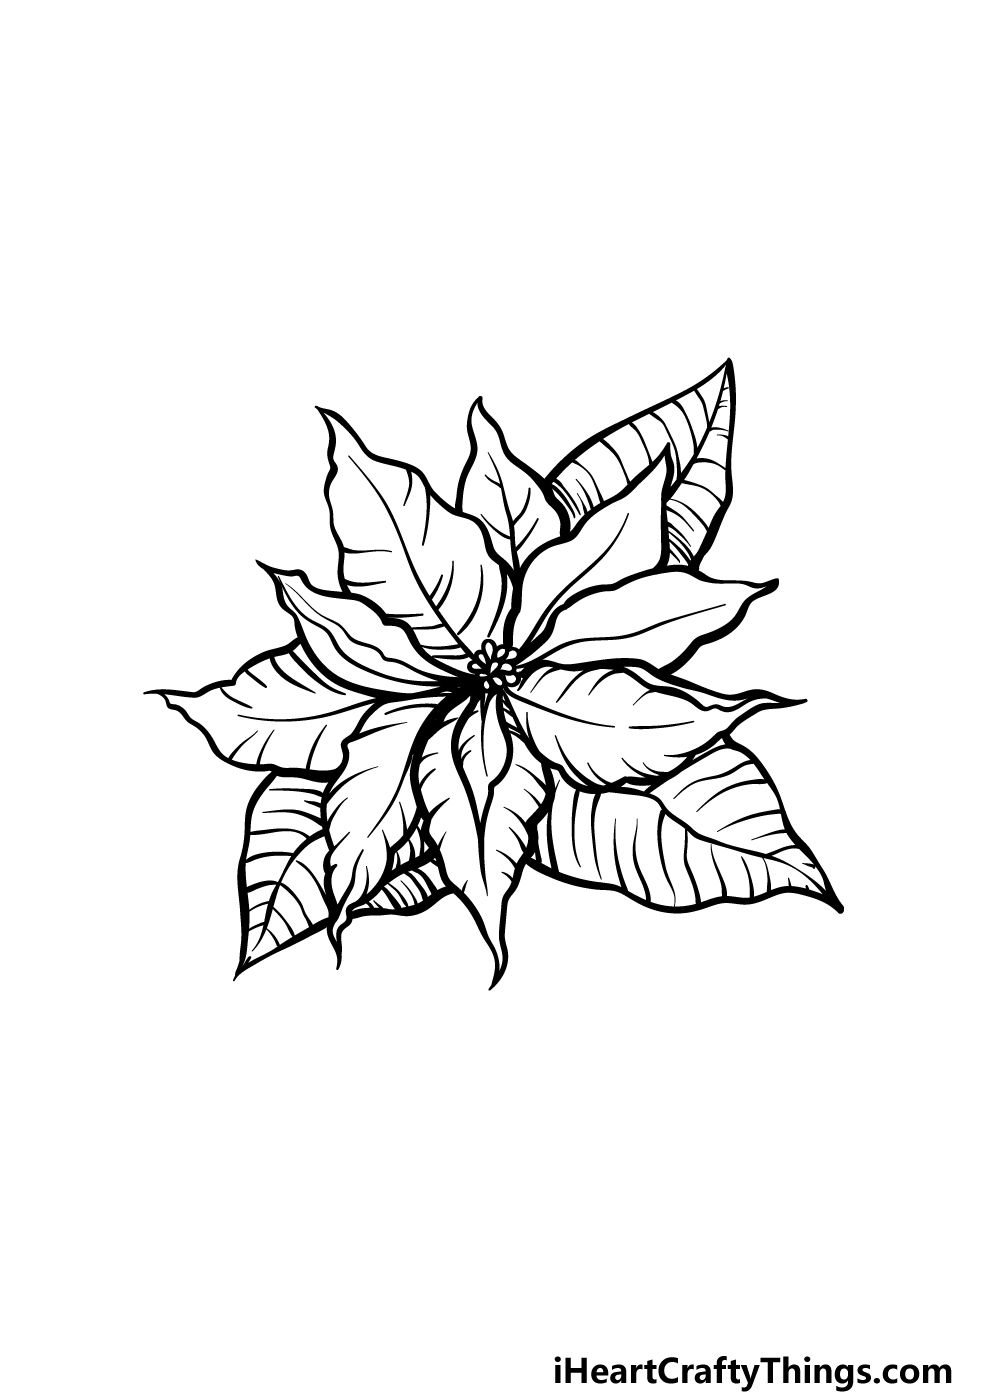 Poinsettia drawing